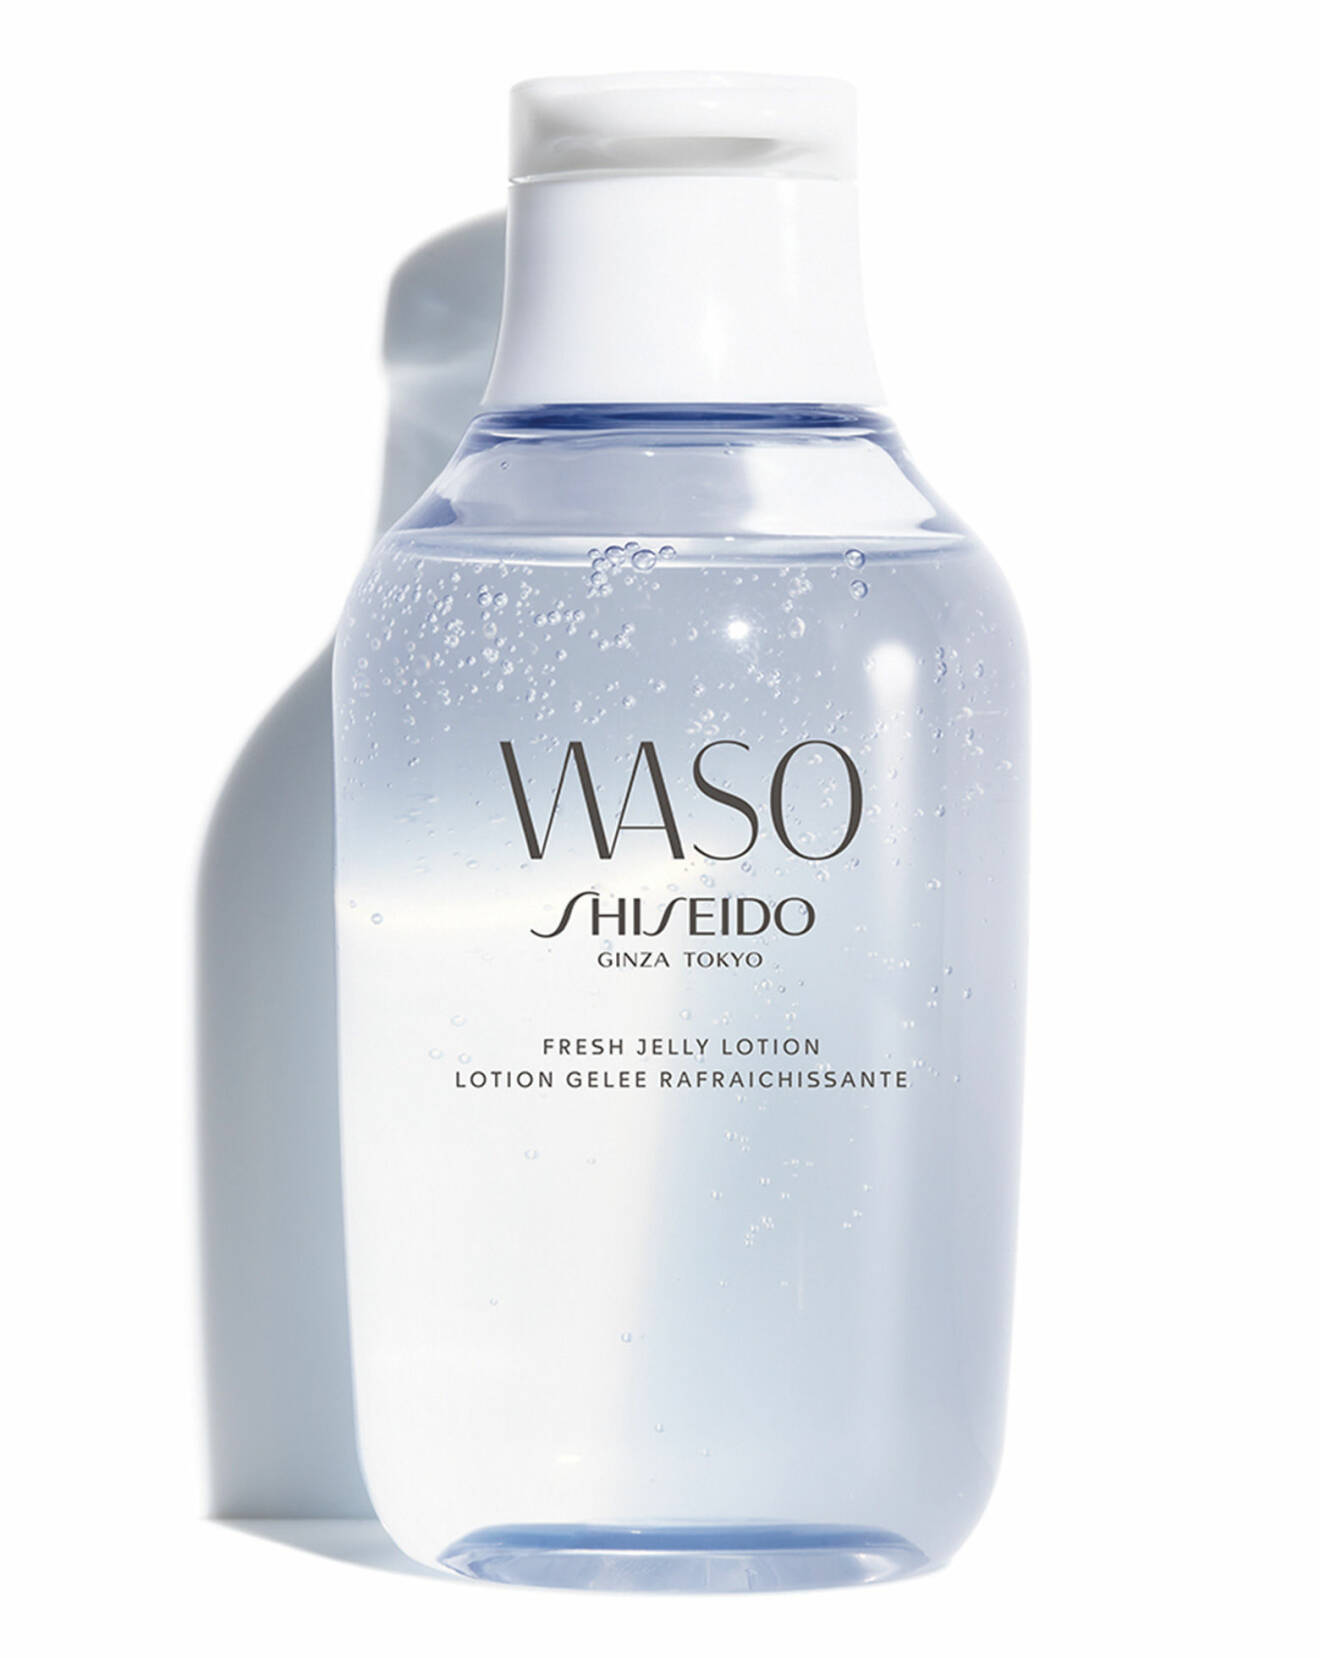  Waso fresh jelly lotion från Shiseido.